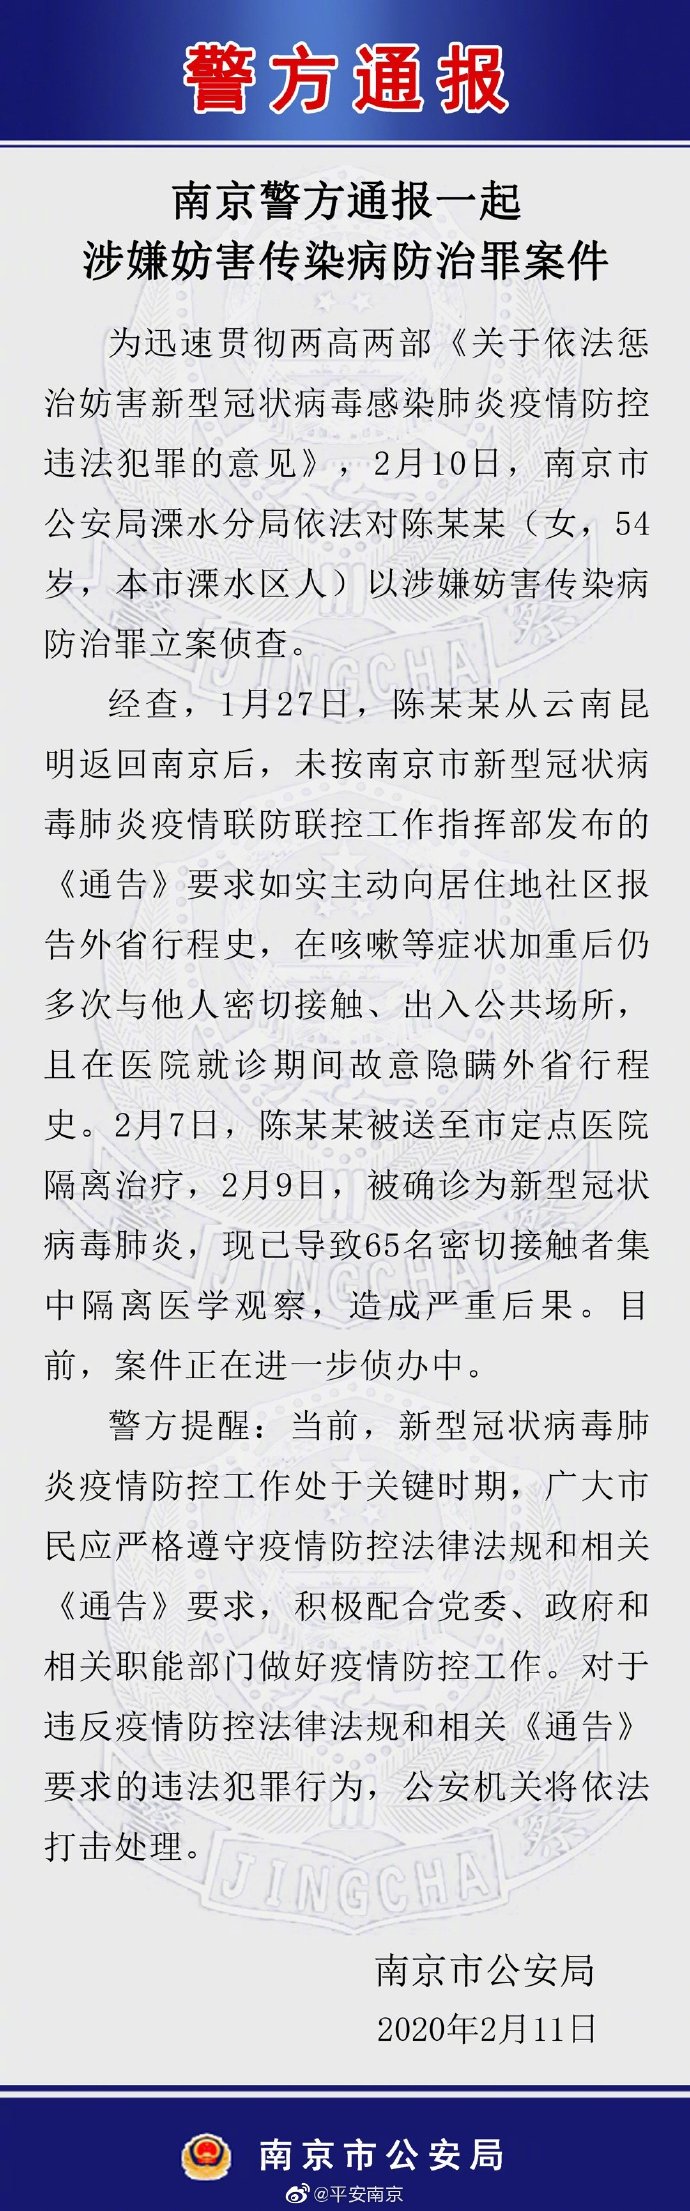 女子隐瞒行程致65人集中隔离 已被南京警方立案侦查